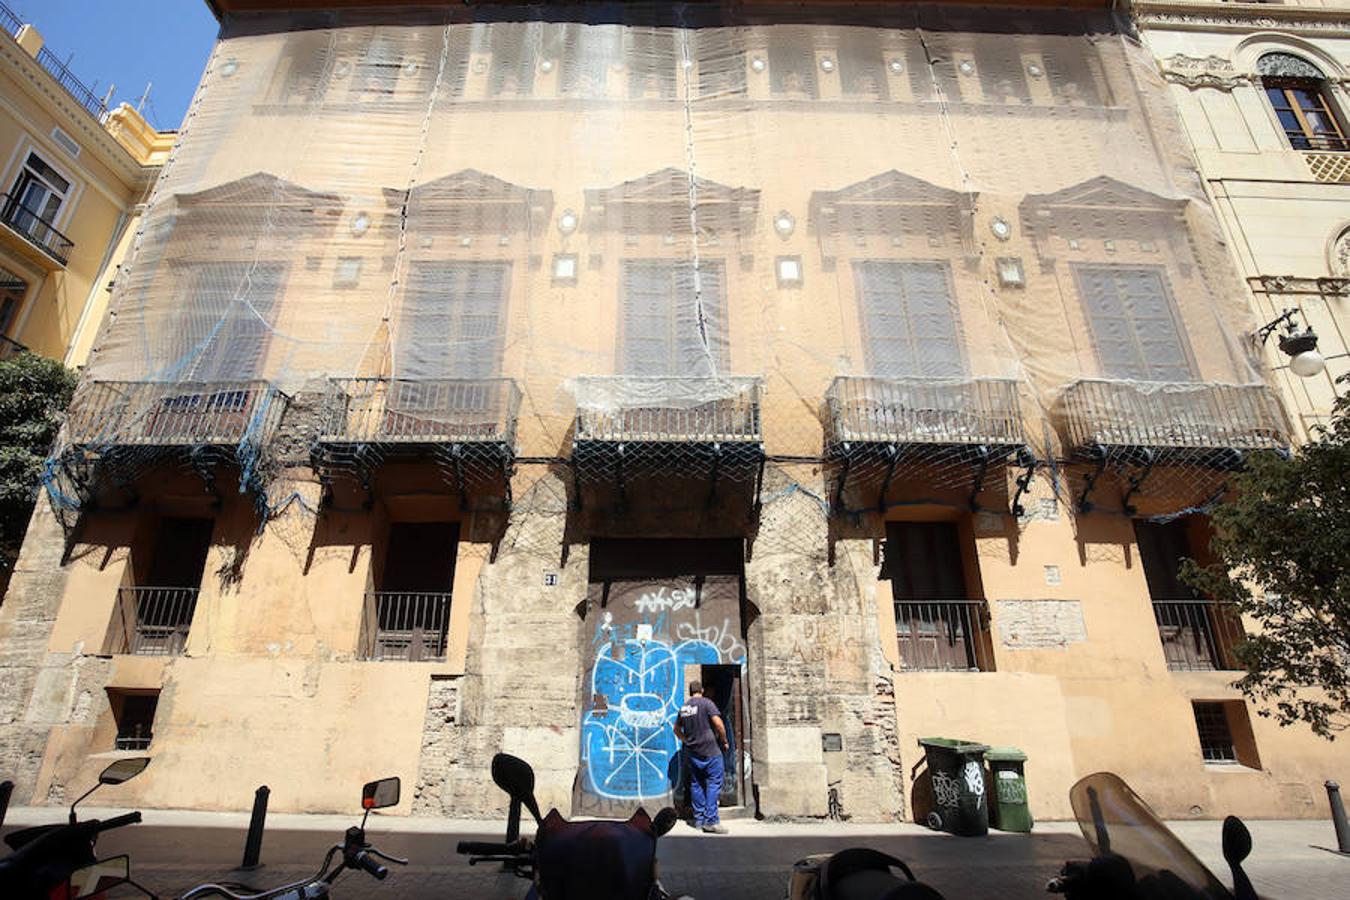 Fotos: Empiezan las obras para convertir el Palacio de Valeriola en un centro de arte